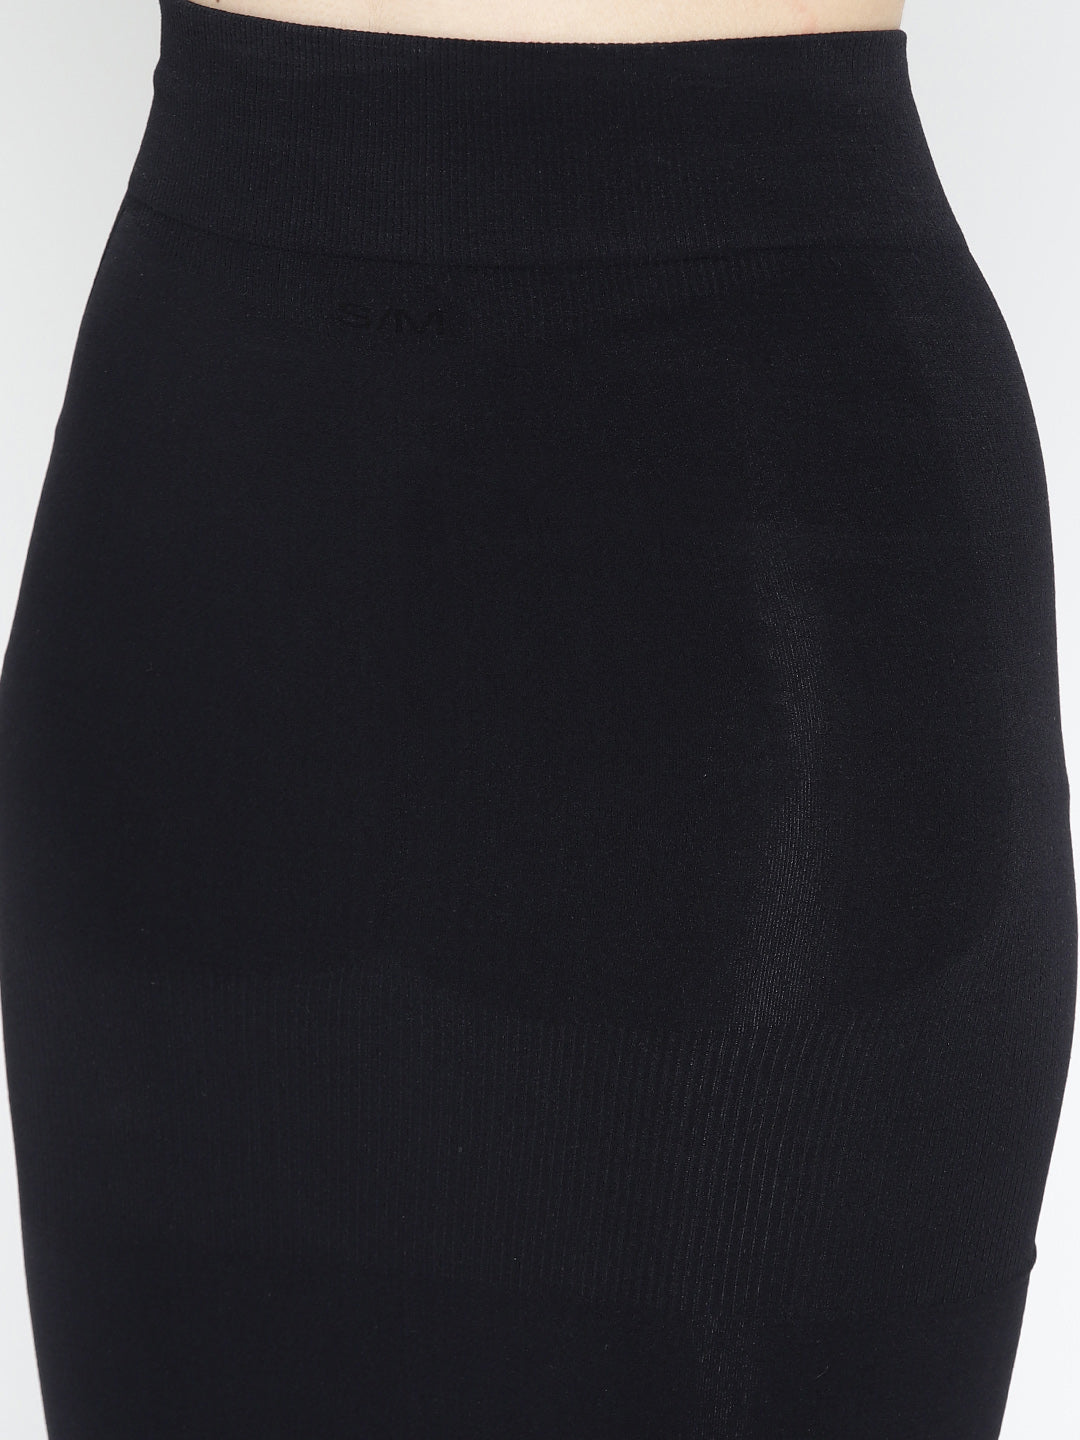 BUYONN Black Colour Saree Shapewear For Women Microfiber Lycra